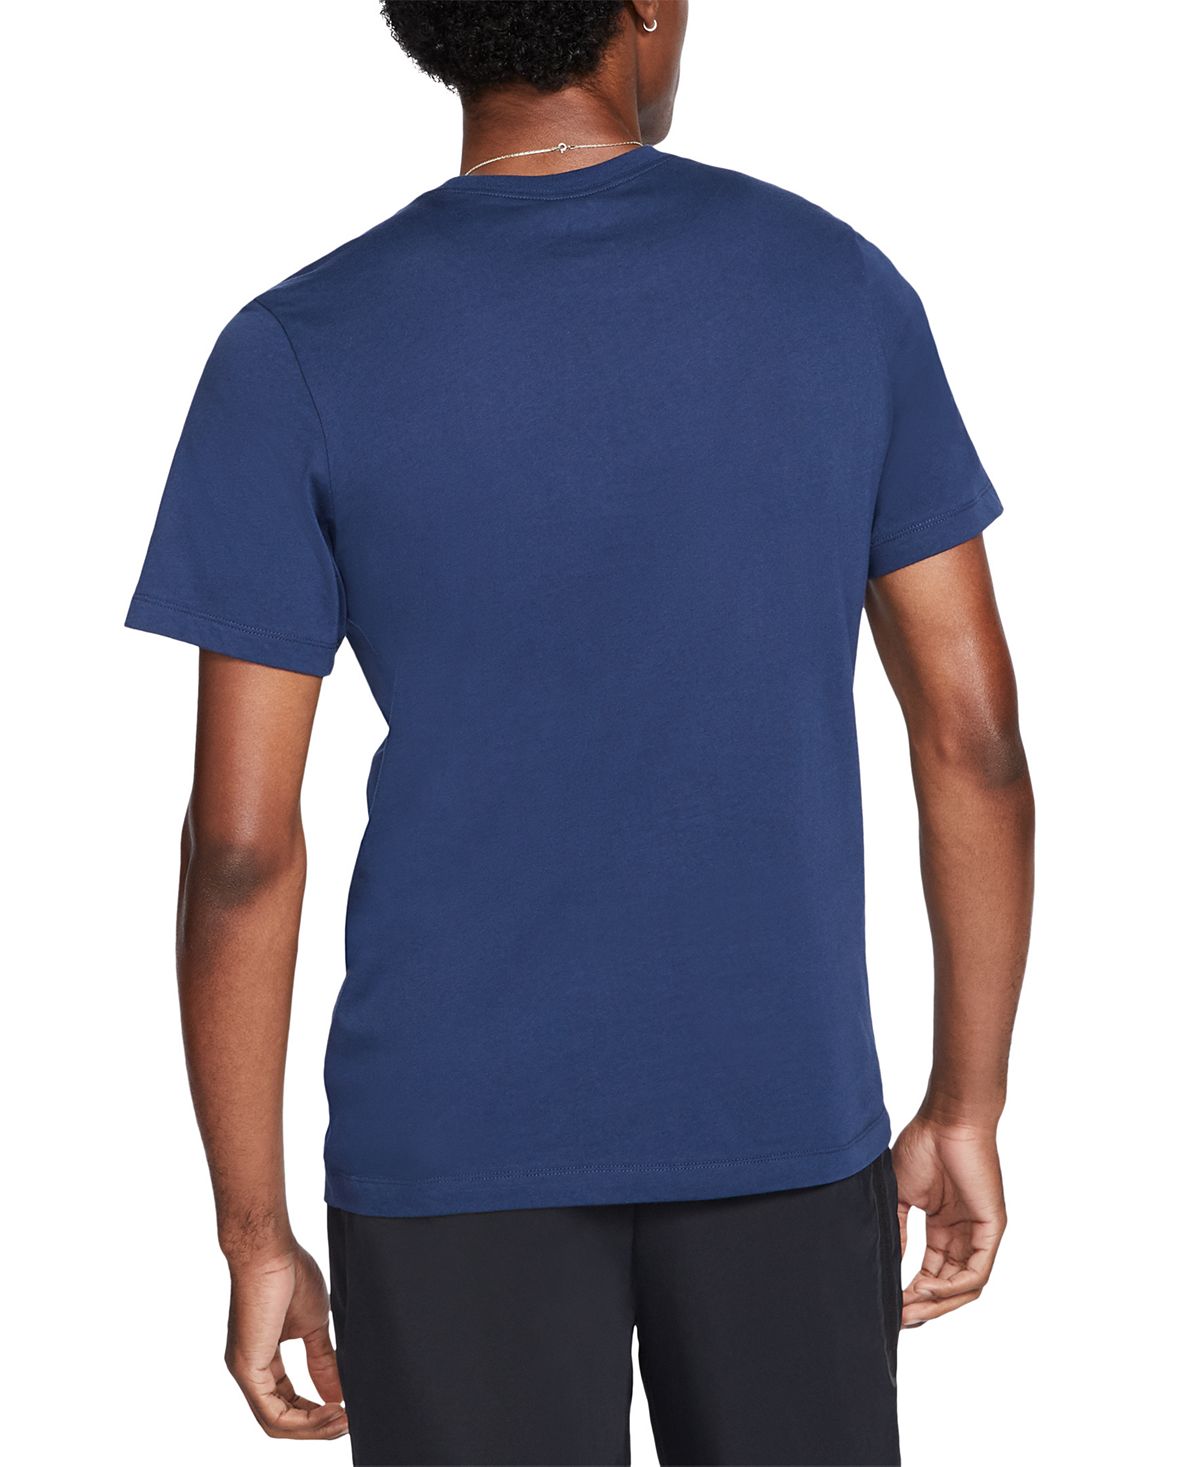 Nike Sportswear Reflective T-shirt Navy